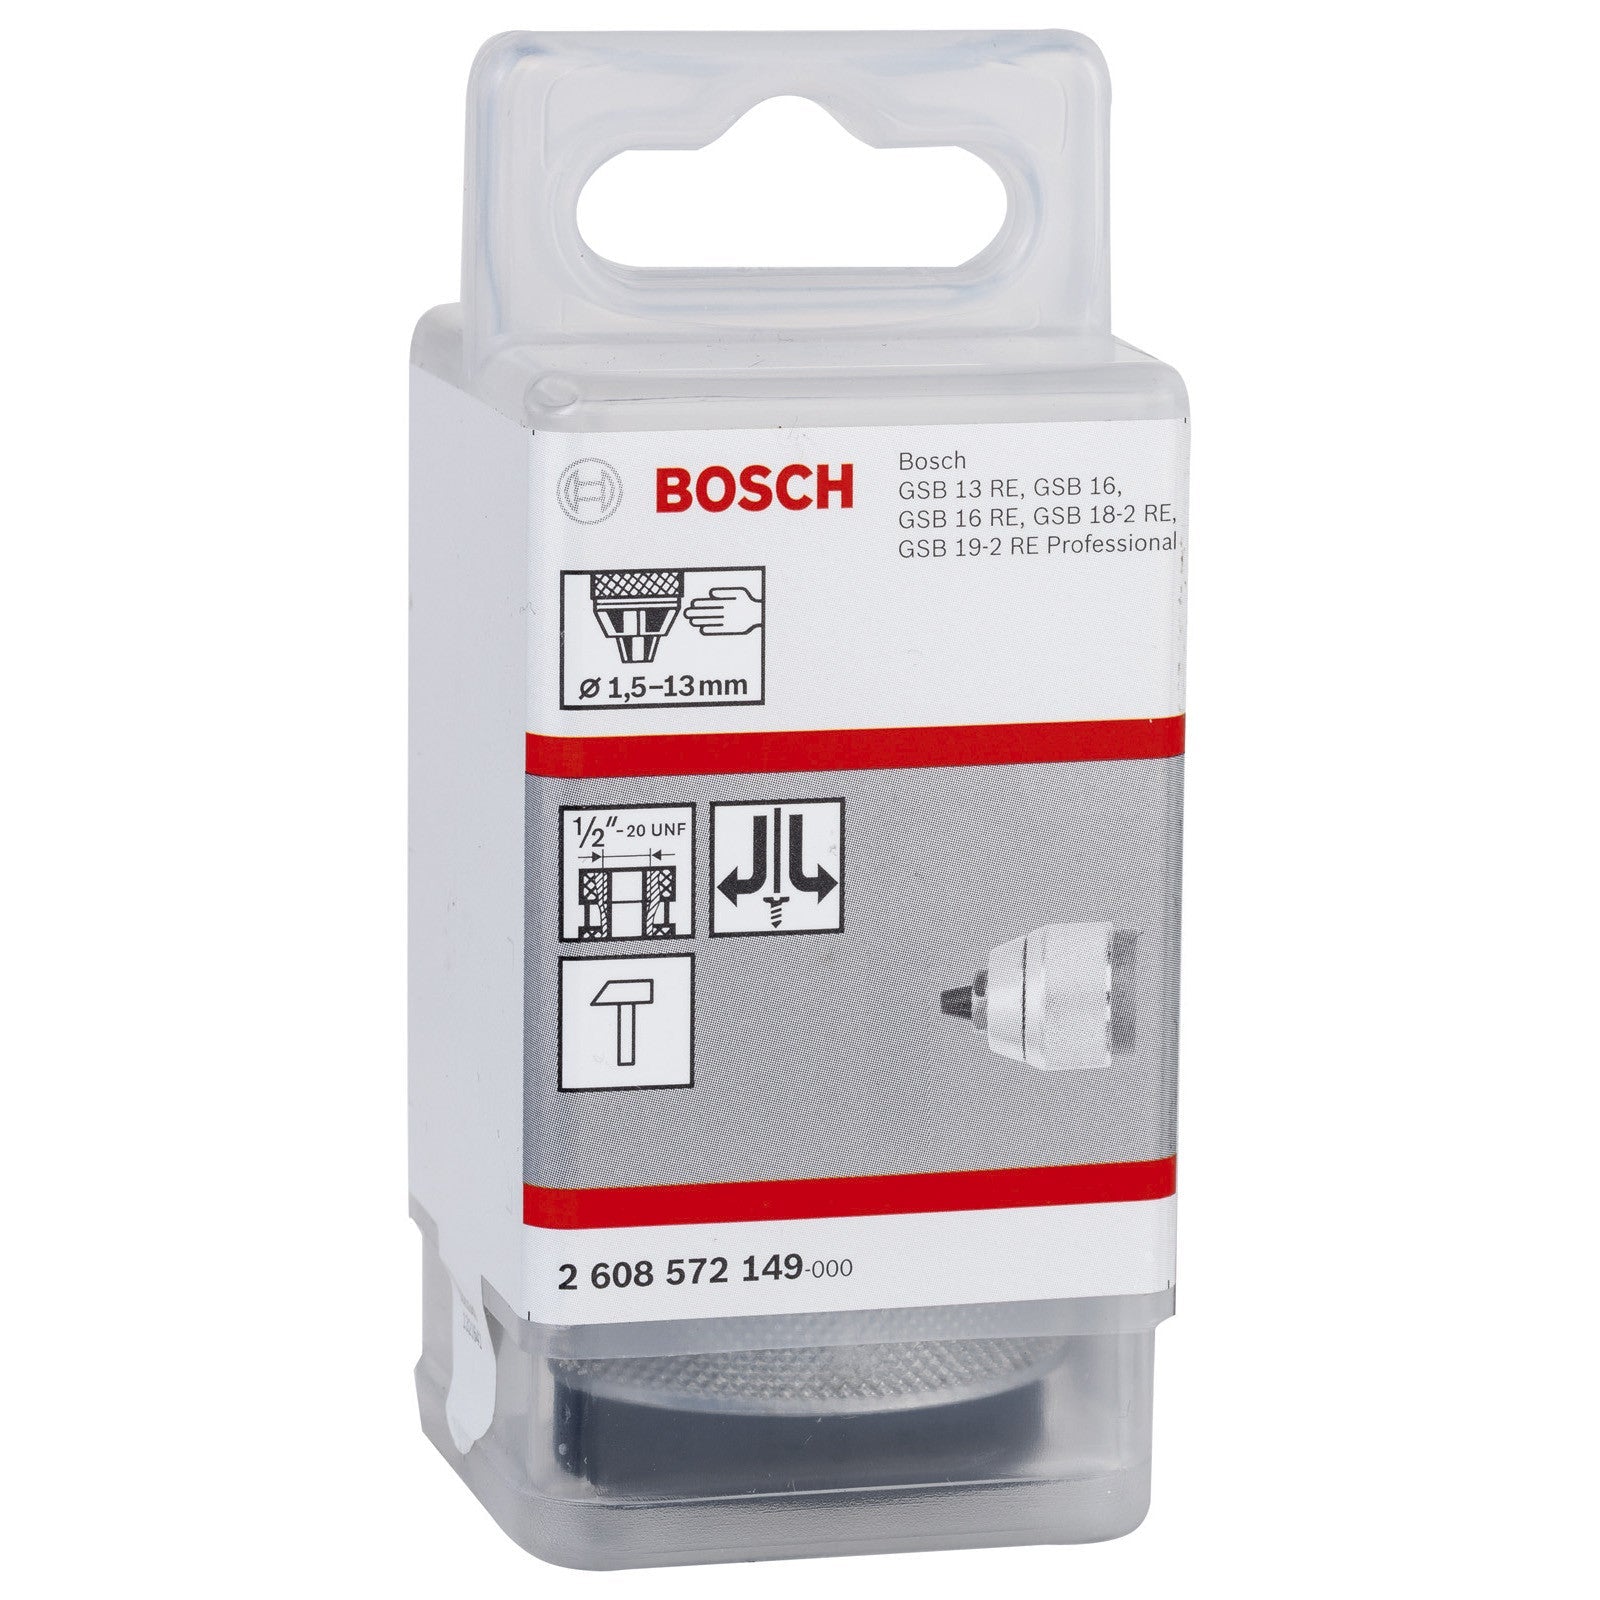 Bosch Keyless chuck 1/2 X 20 UNF 2608572149 Power Tool Services